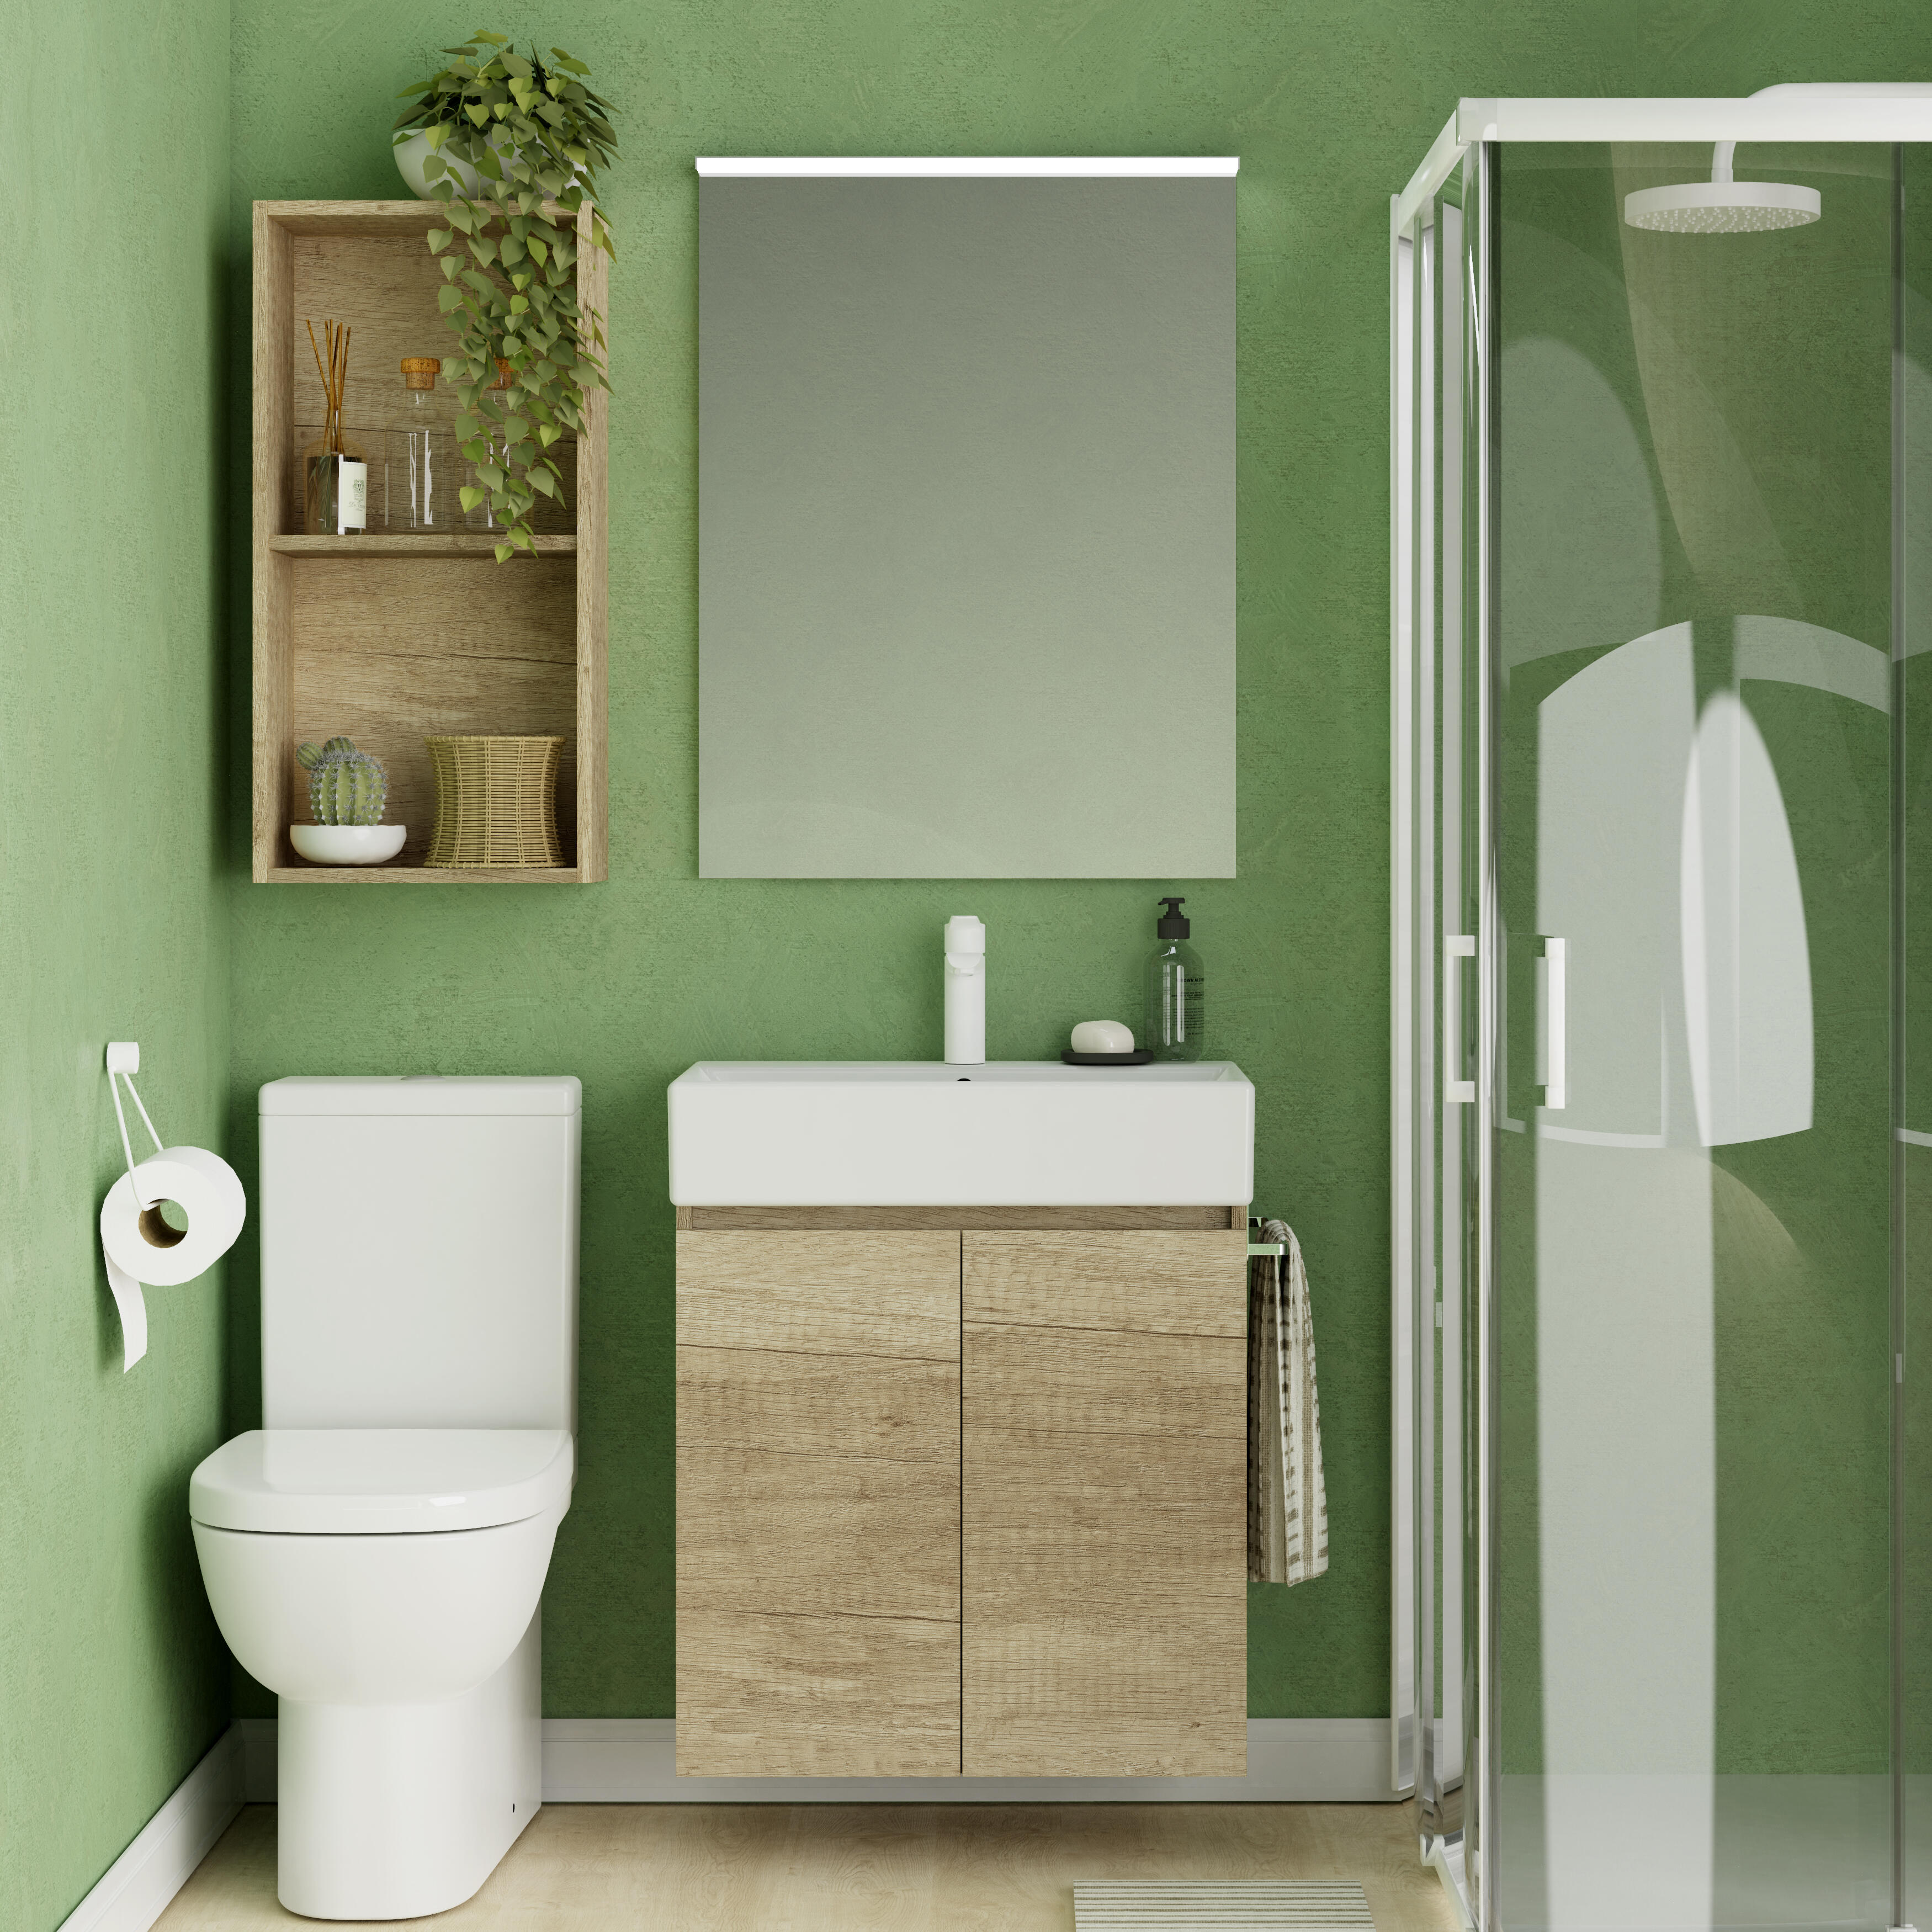 Mueble de baño con lavabo espacio l olmo 60x35 cm